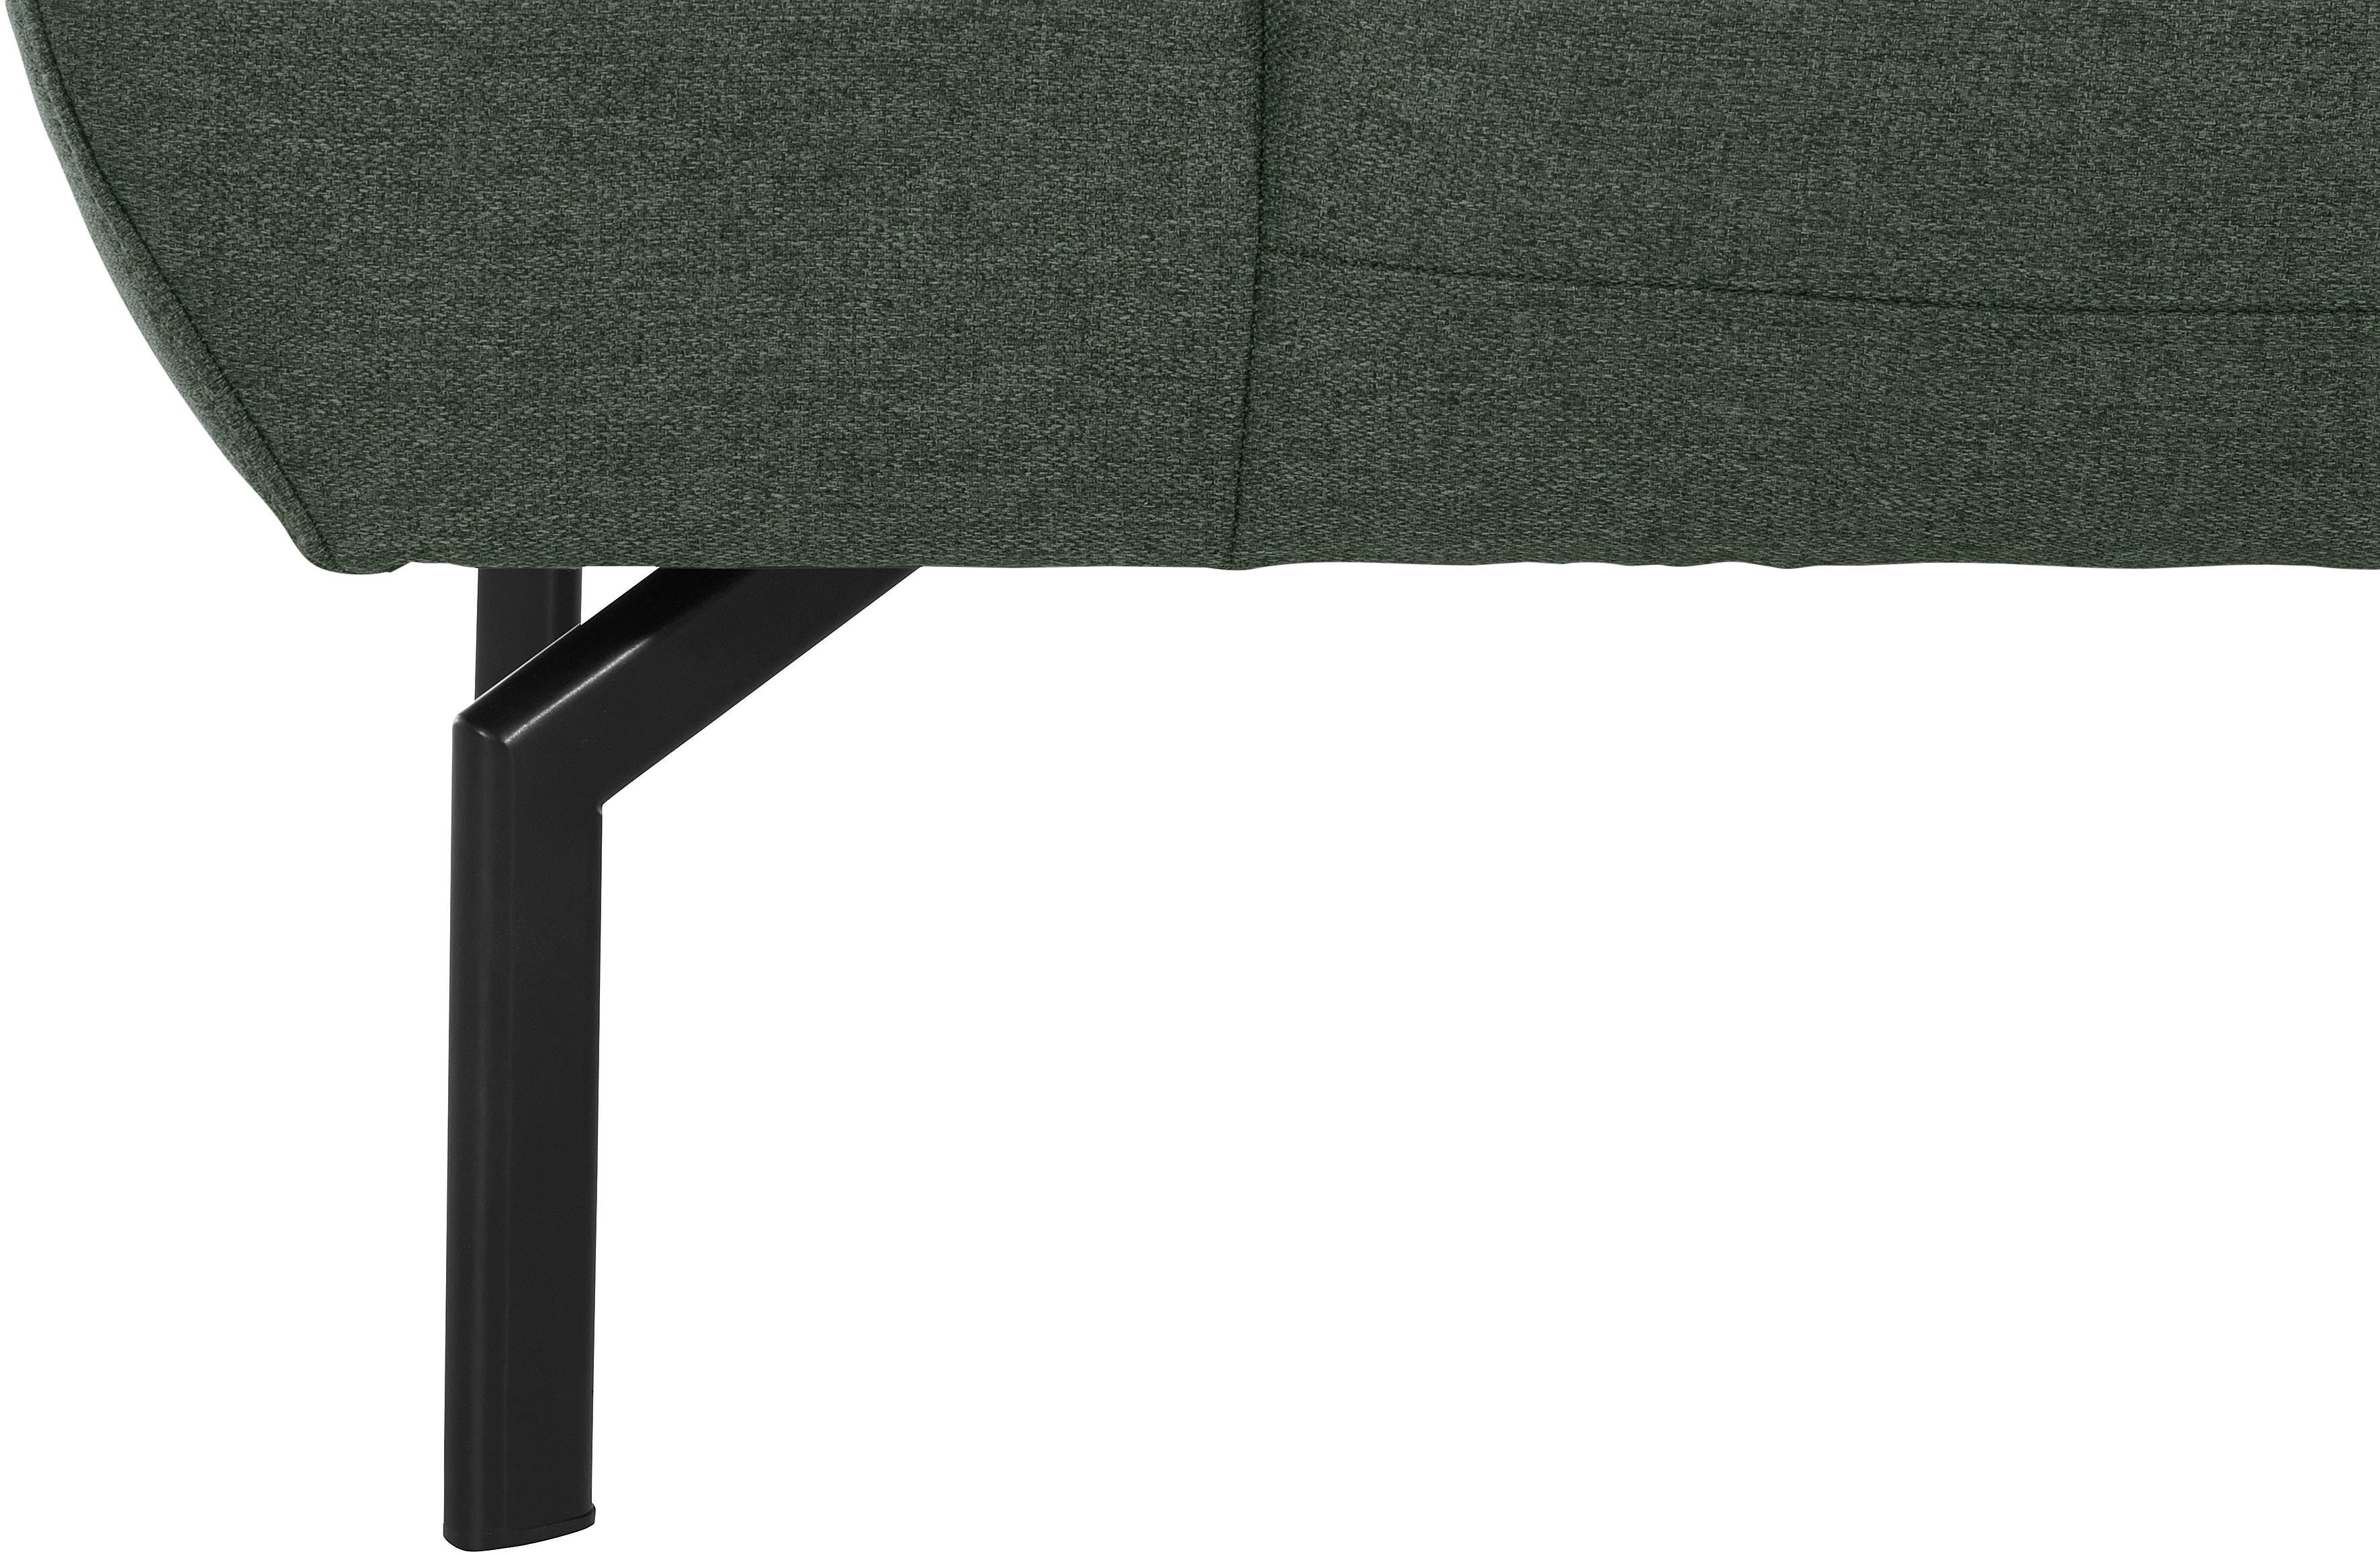 Luxus-Microfaser wahlweise Luxus, Lederoptik in of Rückenverstellung, 2,5-Sitzer mit Trapino Style Places